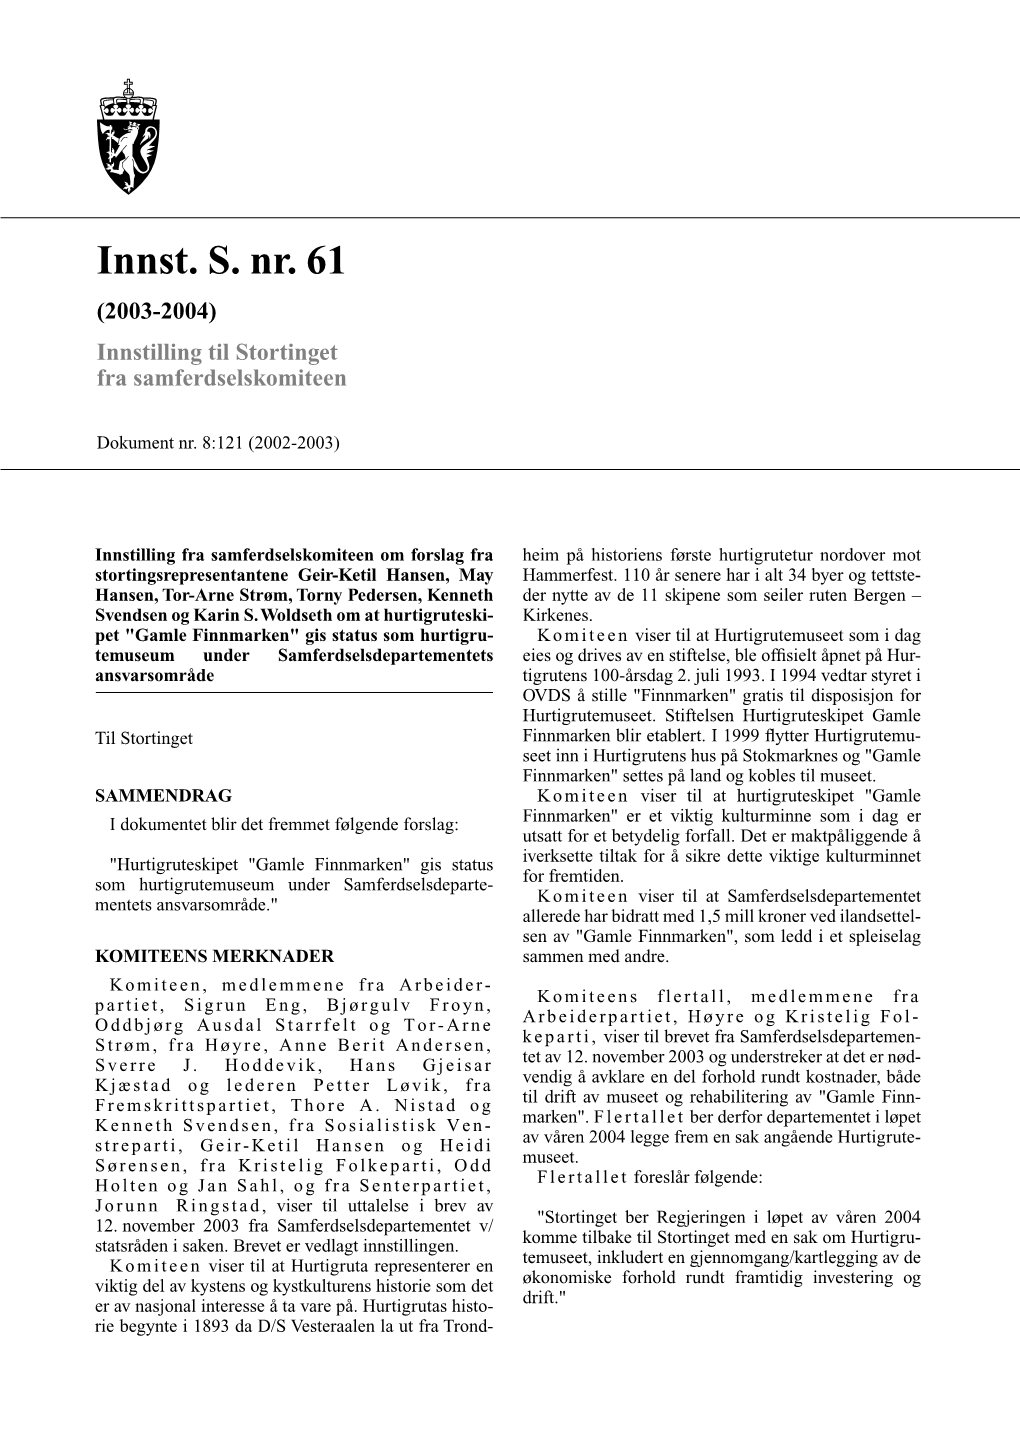 Innst. S. Nr. 61 (2003-2004) Innstilling Til Stortinget Fra Samferdselskomiteen